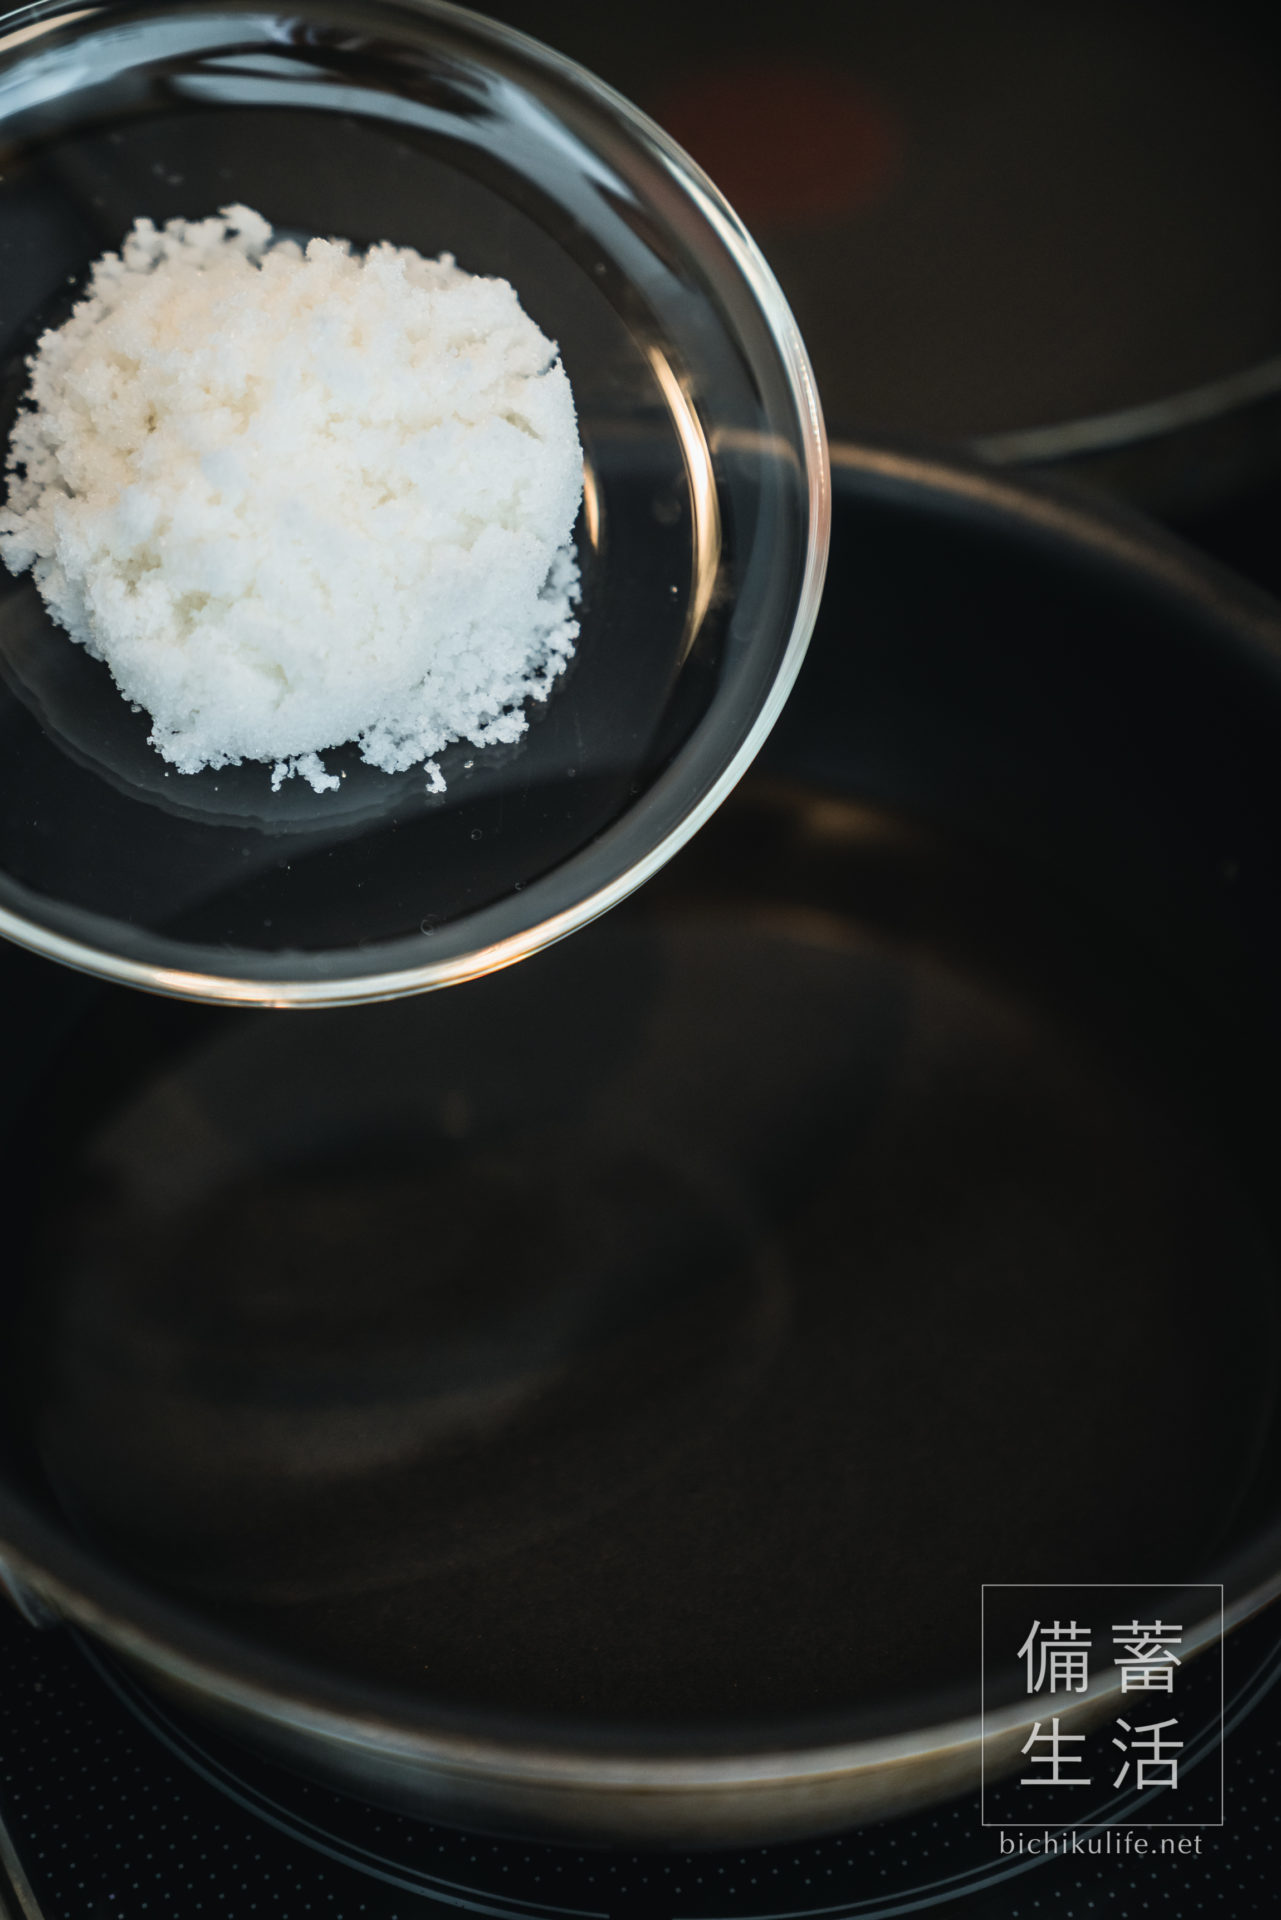 らっきょうの塩漬け 自家製らっきょう漬けのレシピ、水と粗塩を沸騰させ、塩水を作る